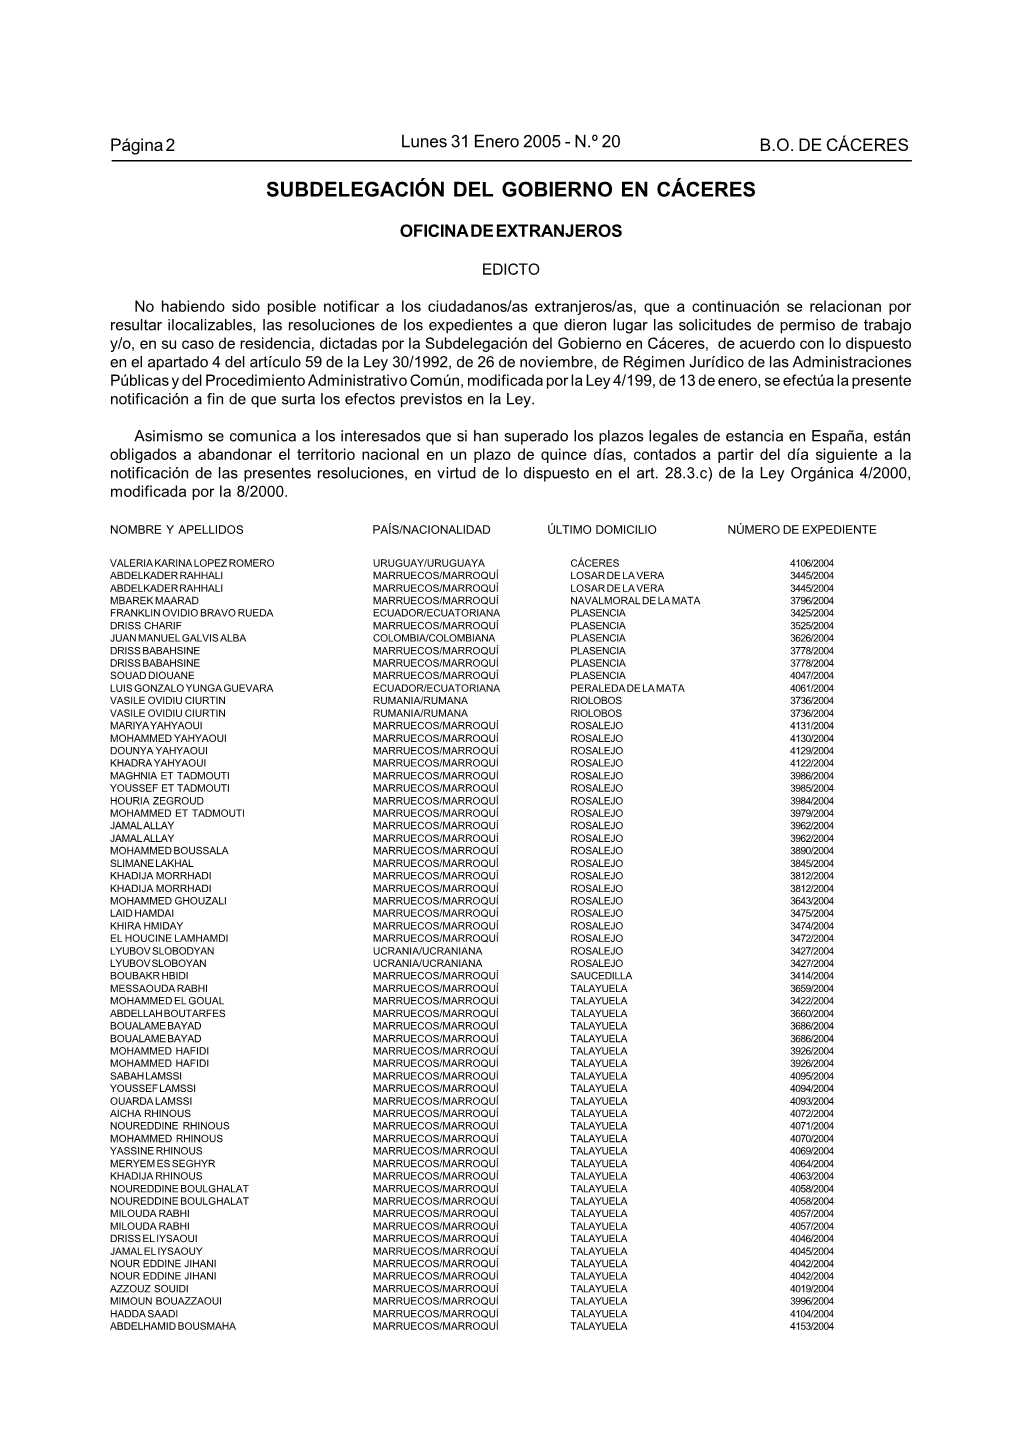 Subdelegación Del Gobierno En Cáceres